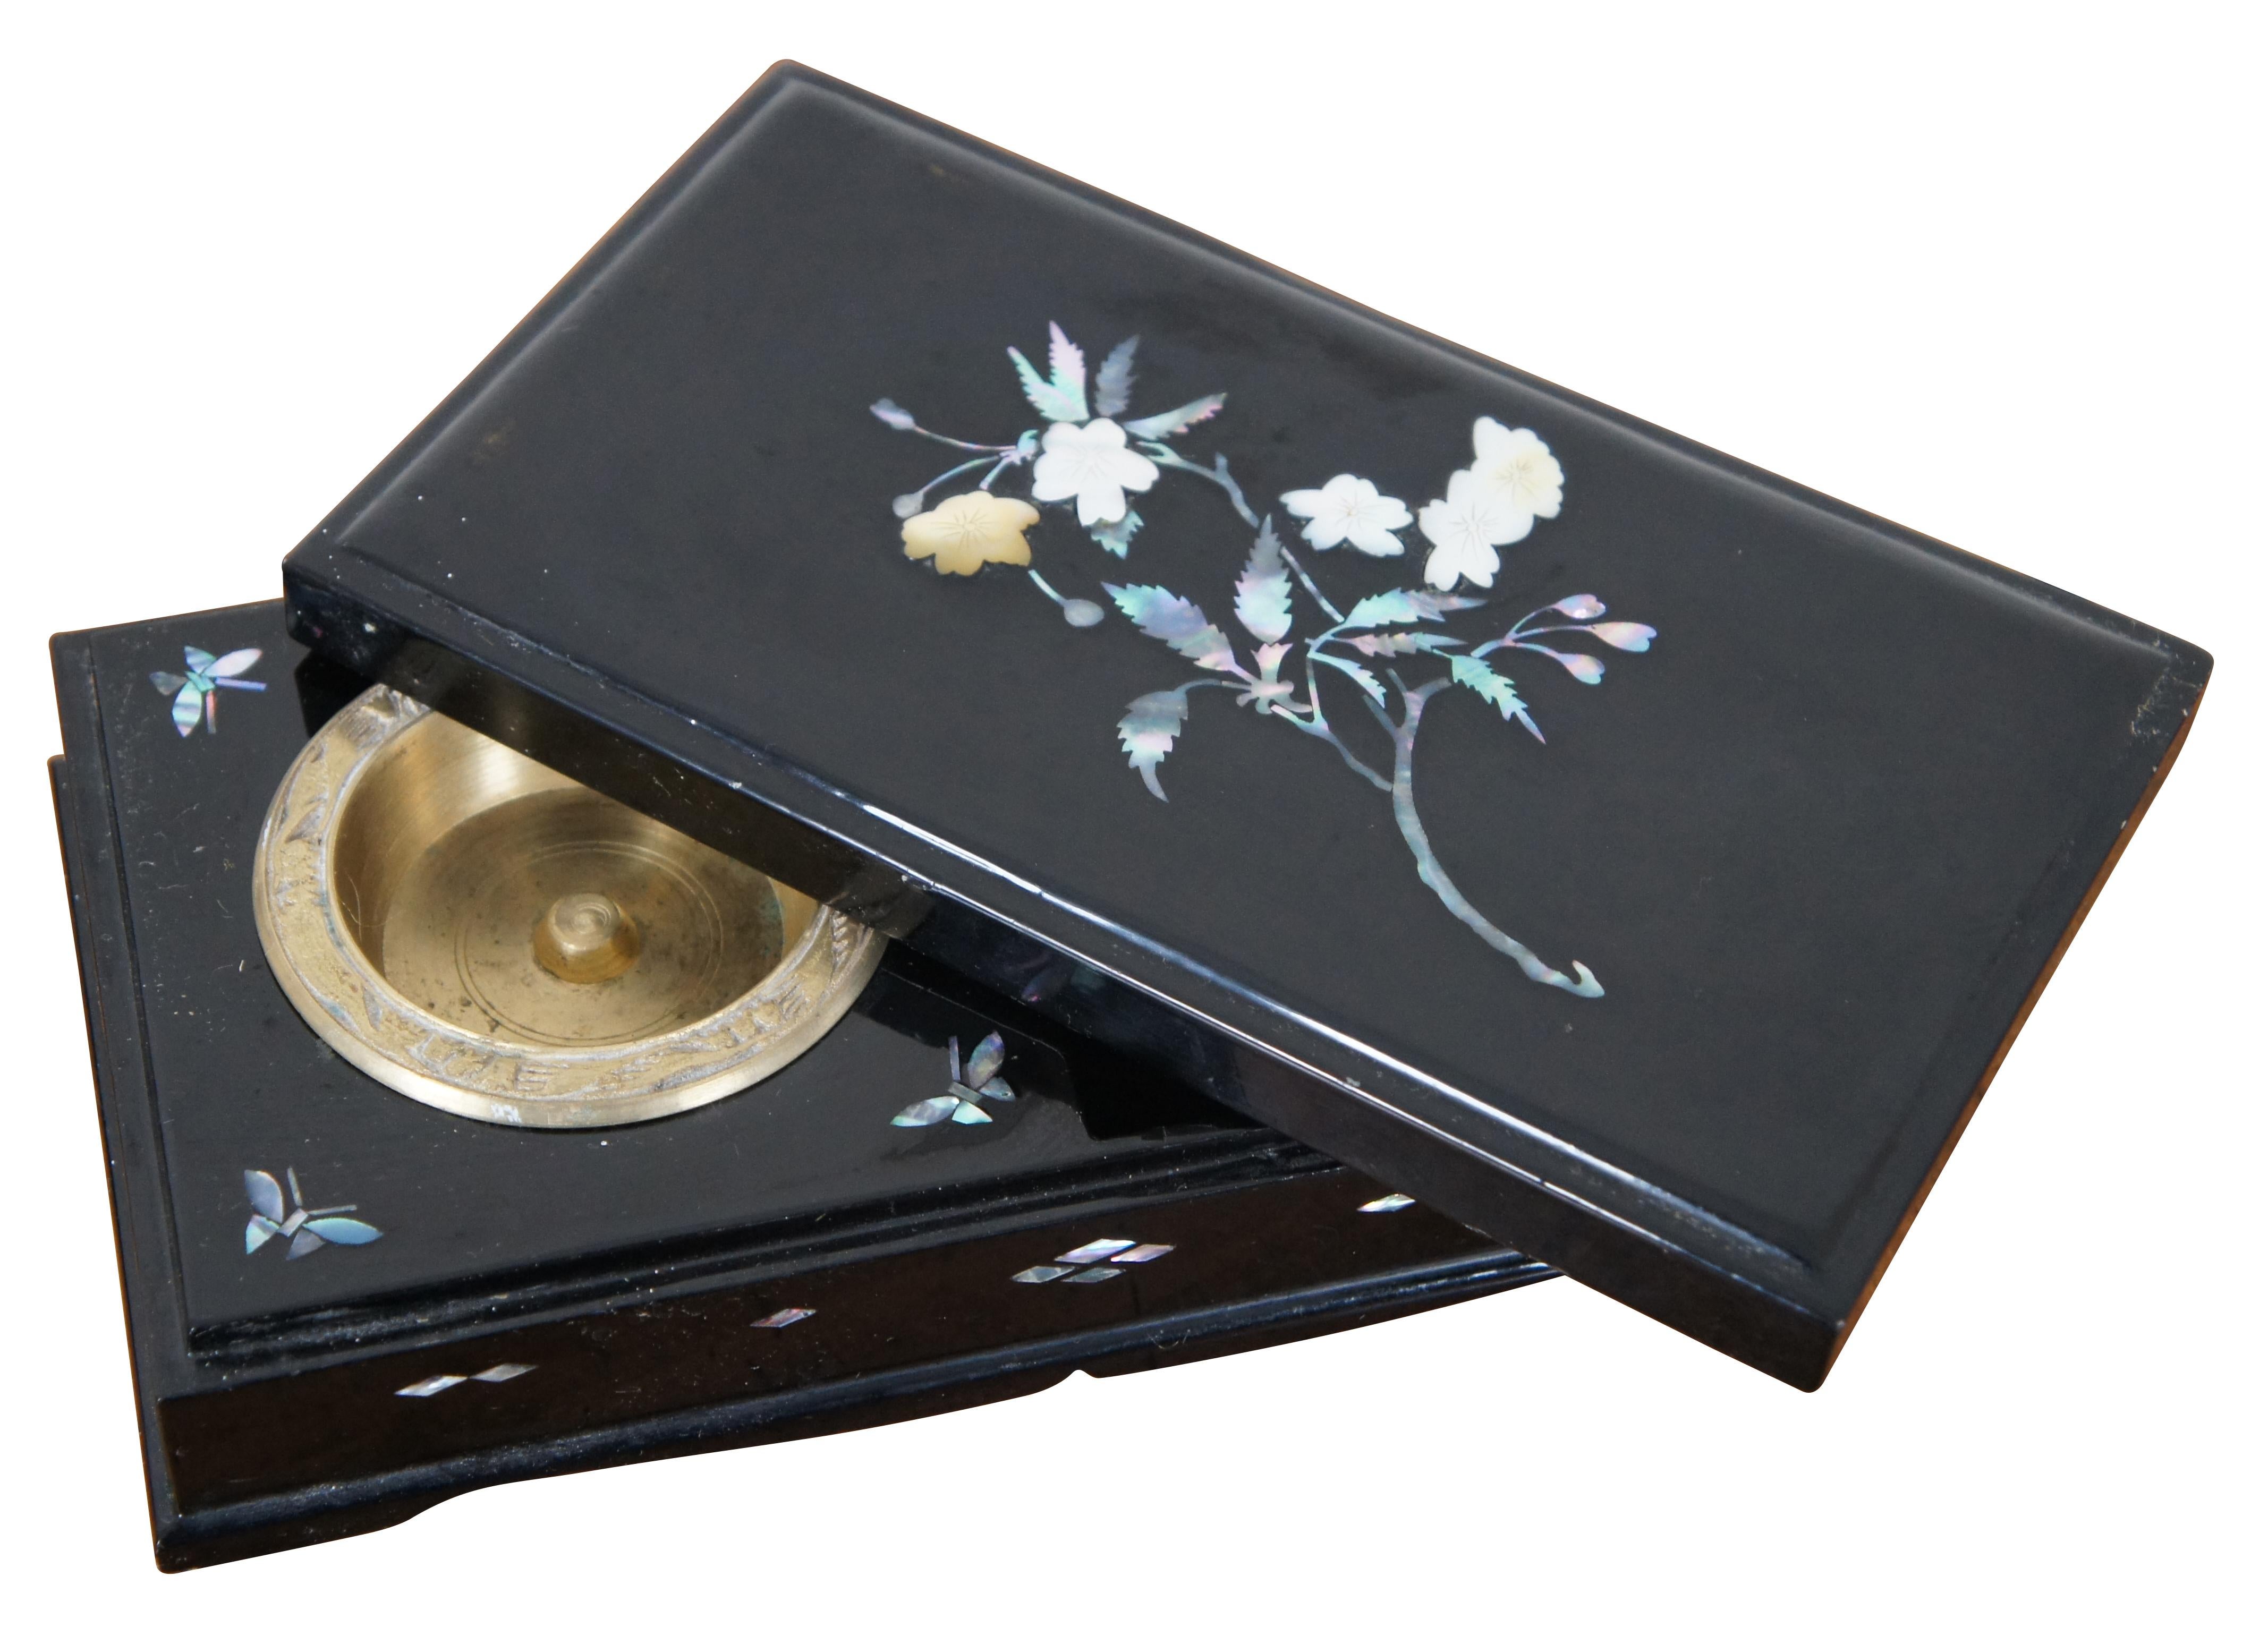 Boîte à cigarettes en laque noire Chinoiserie japonaise du milieu du siècle, décorée de fleurs et de papillons en nacre, s'ouvrant pour révéler un compartiment pour les cigarettes / le tabac et un cendrier en laiton.  Vers les années 1950.